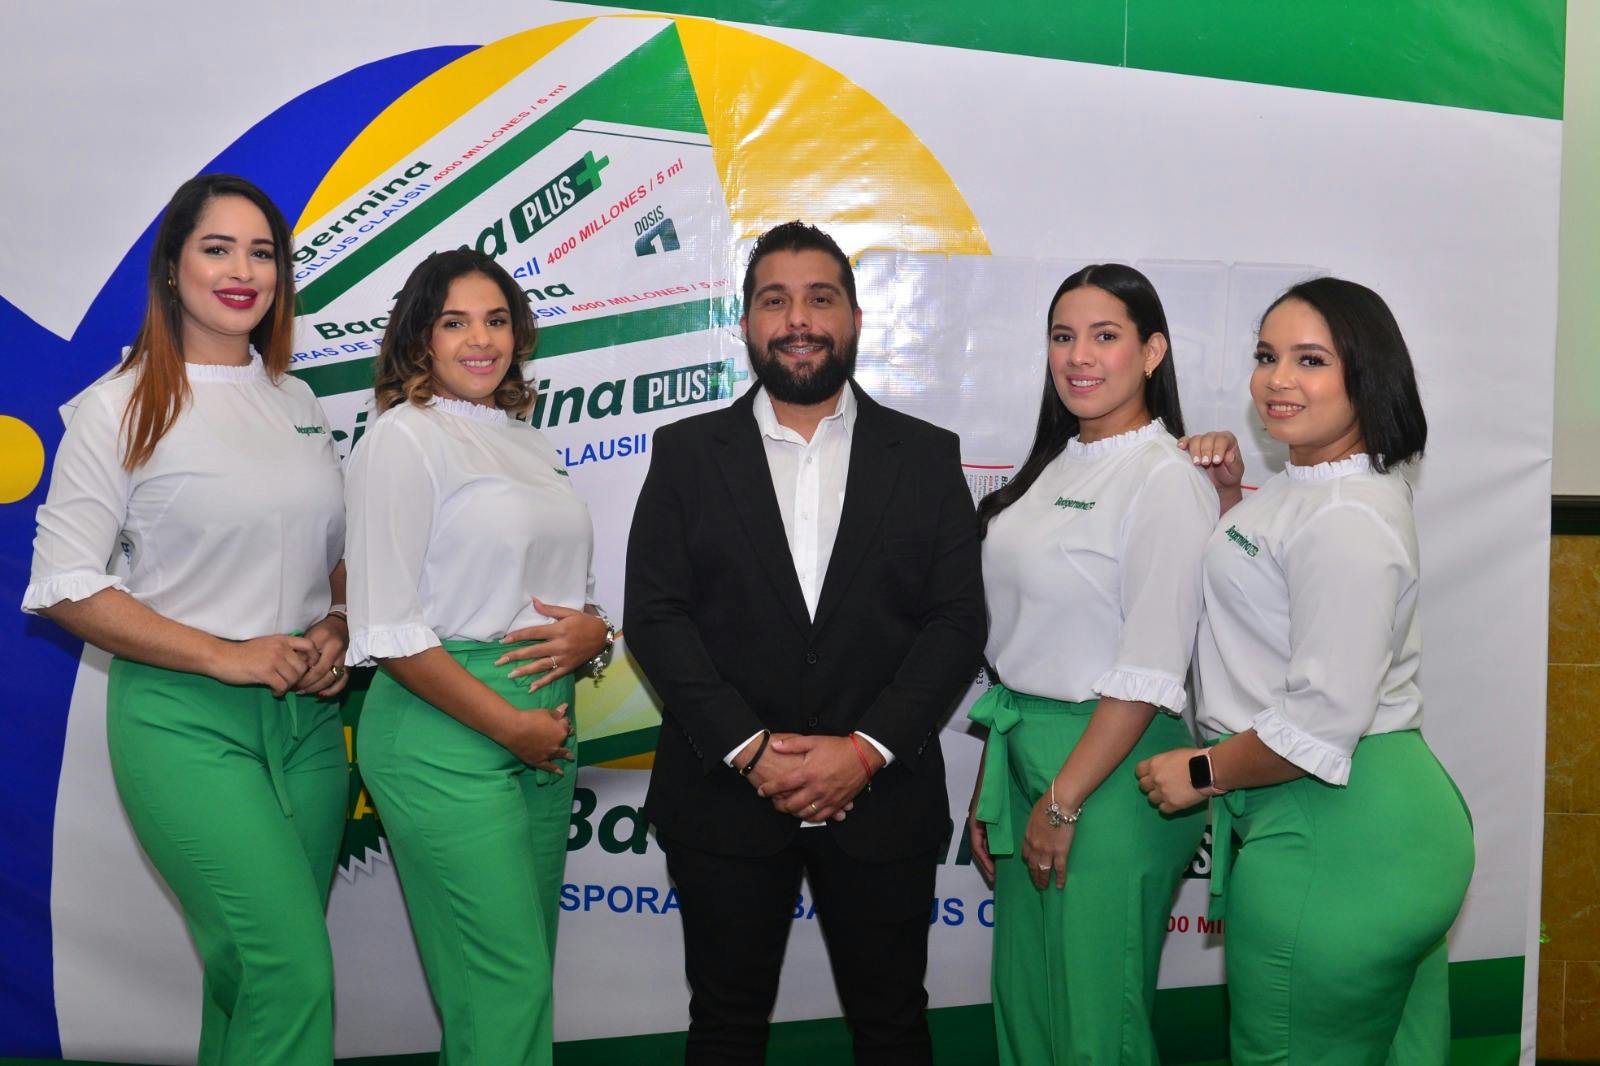 Drotafarma sigue apostando por la salud de los dominicanos con Bacigermina Plus